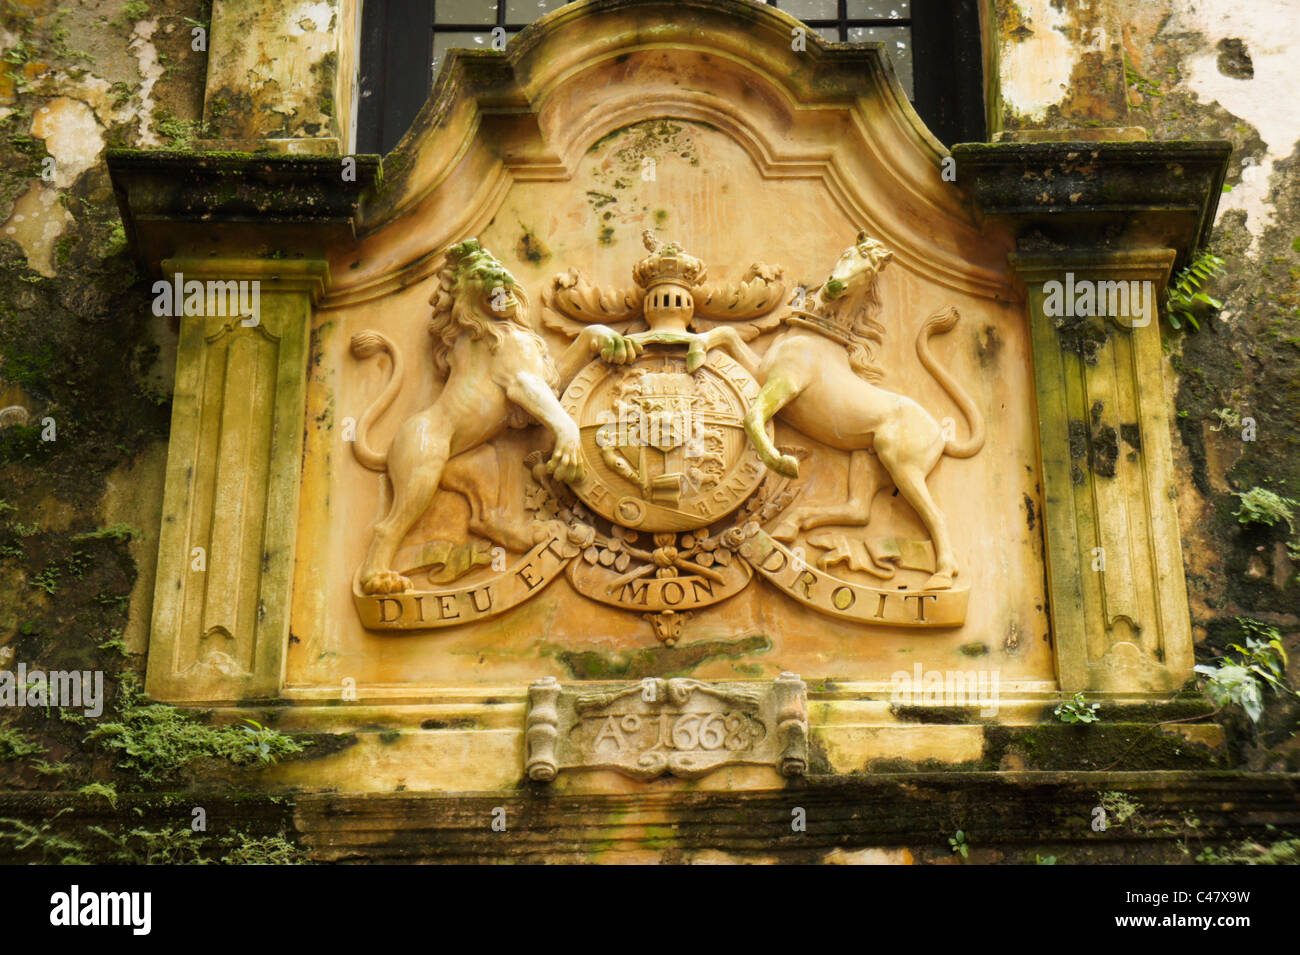 Armoiries royales du Royaume-Uni avec l'est la devise de la monarchie britannique Dieu et mon droit à la porte d'entrée à l'historique Banque D'Images